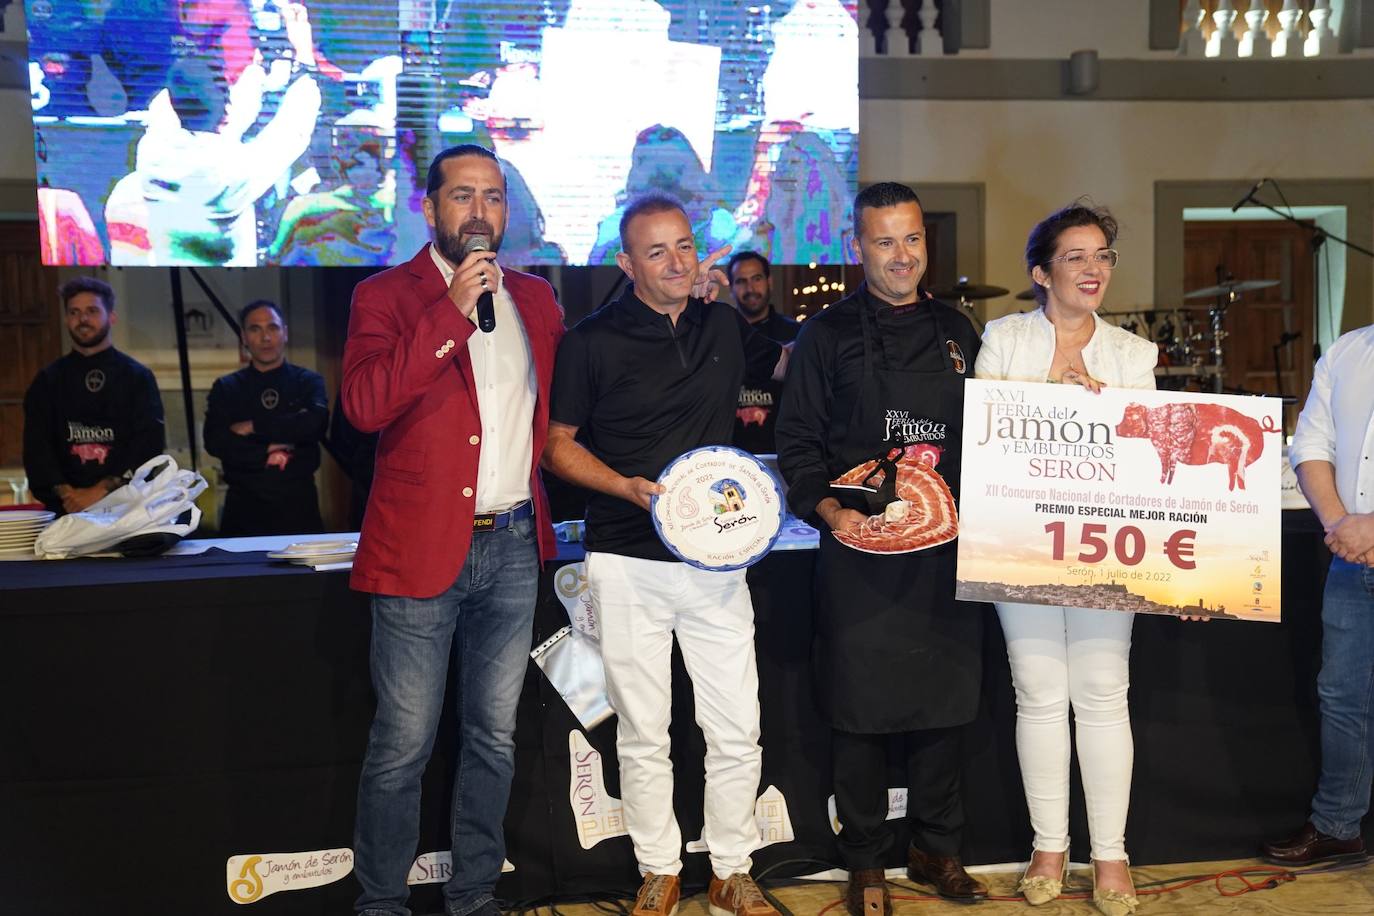 Fotos: Concurso Nacional de Cortadores de Jamón de Serón